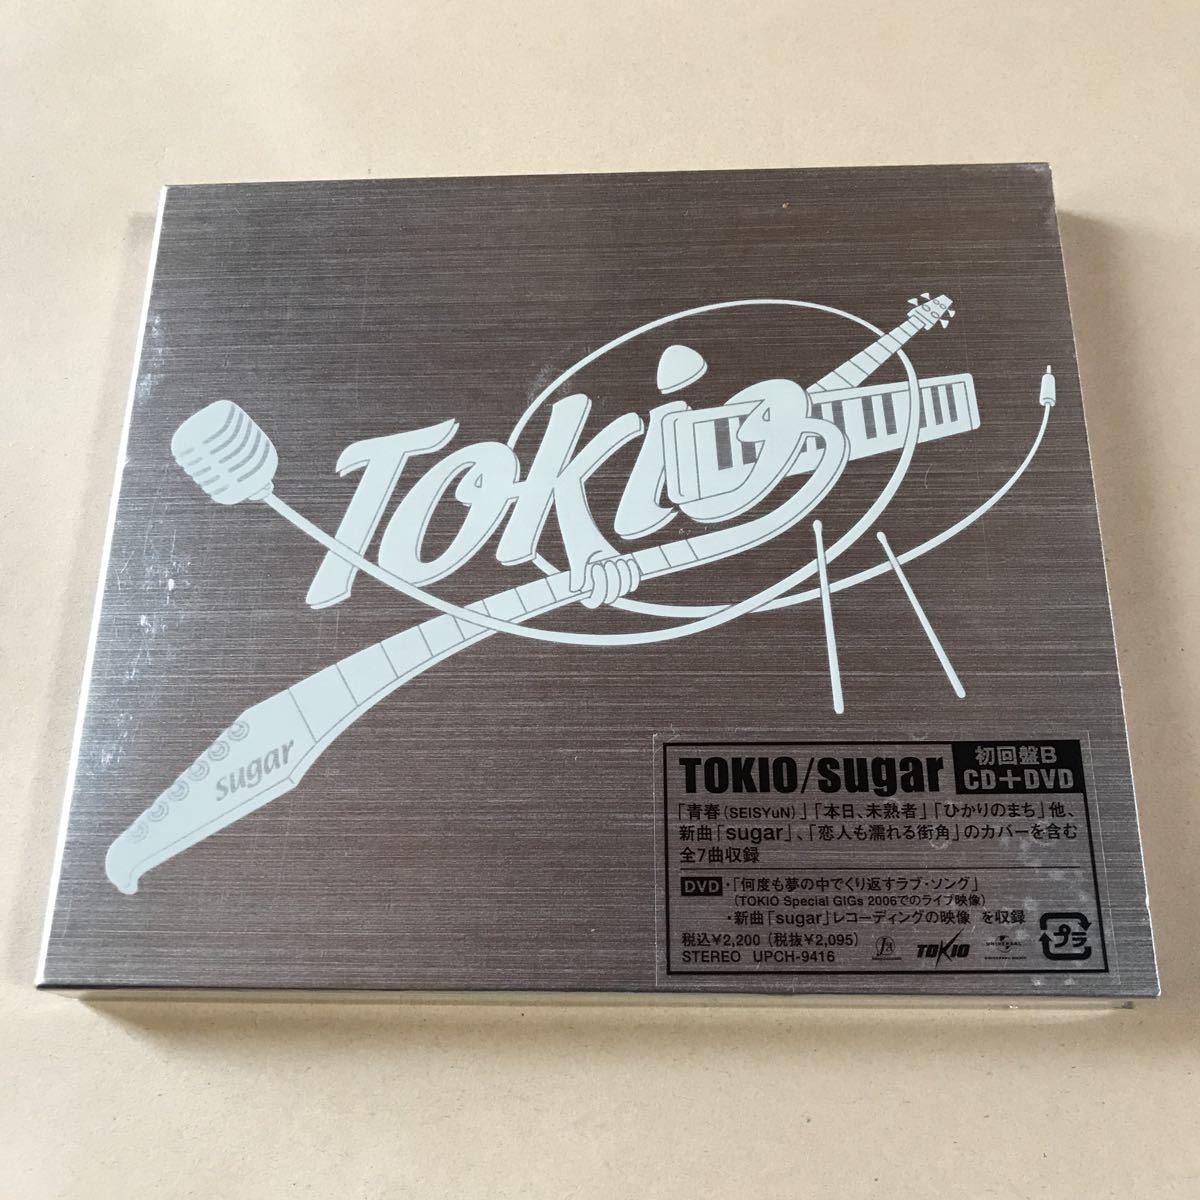 TOKIO CD+DVD 2 листов комплект [sugar] первое издание B